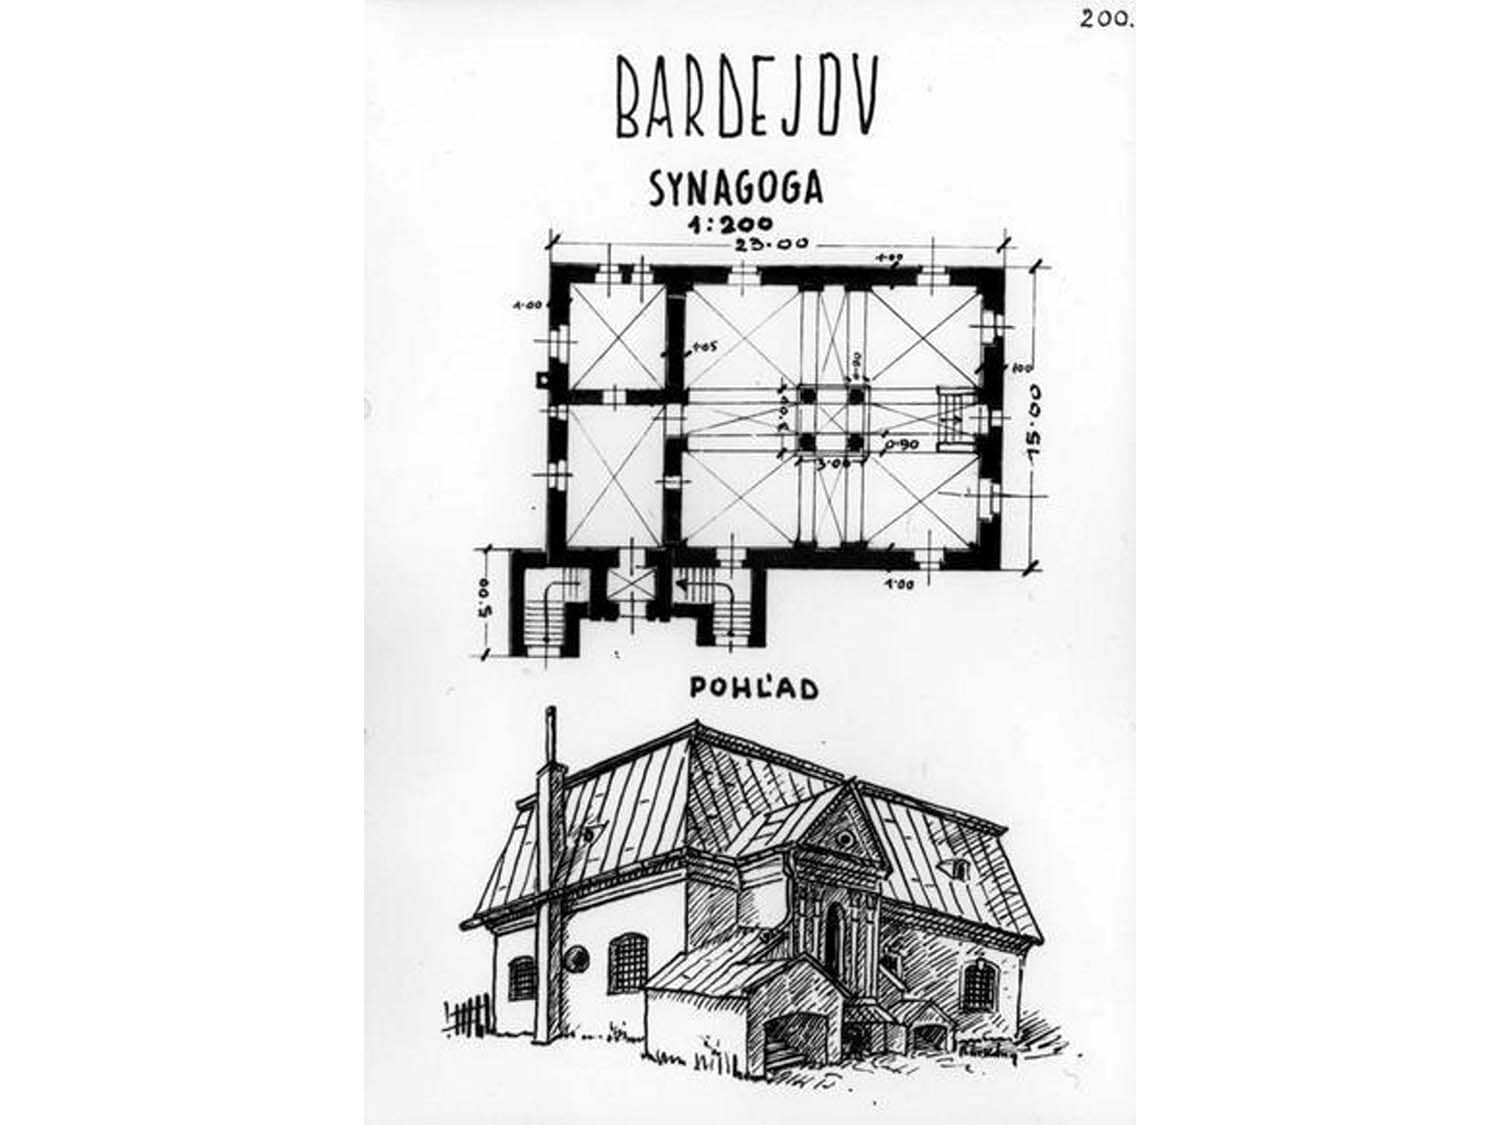 Floor plan of Bardejov Old Synagogue